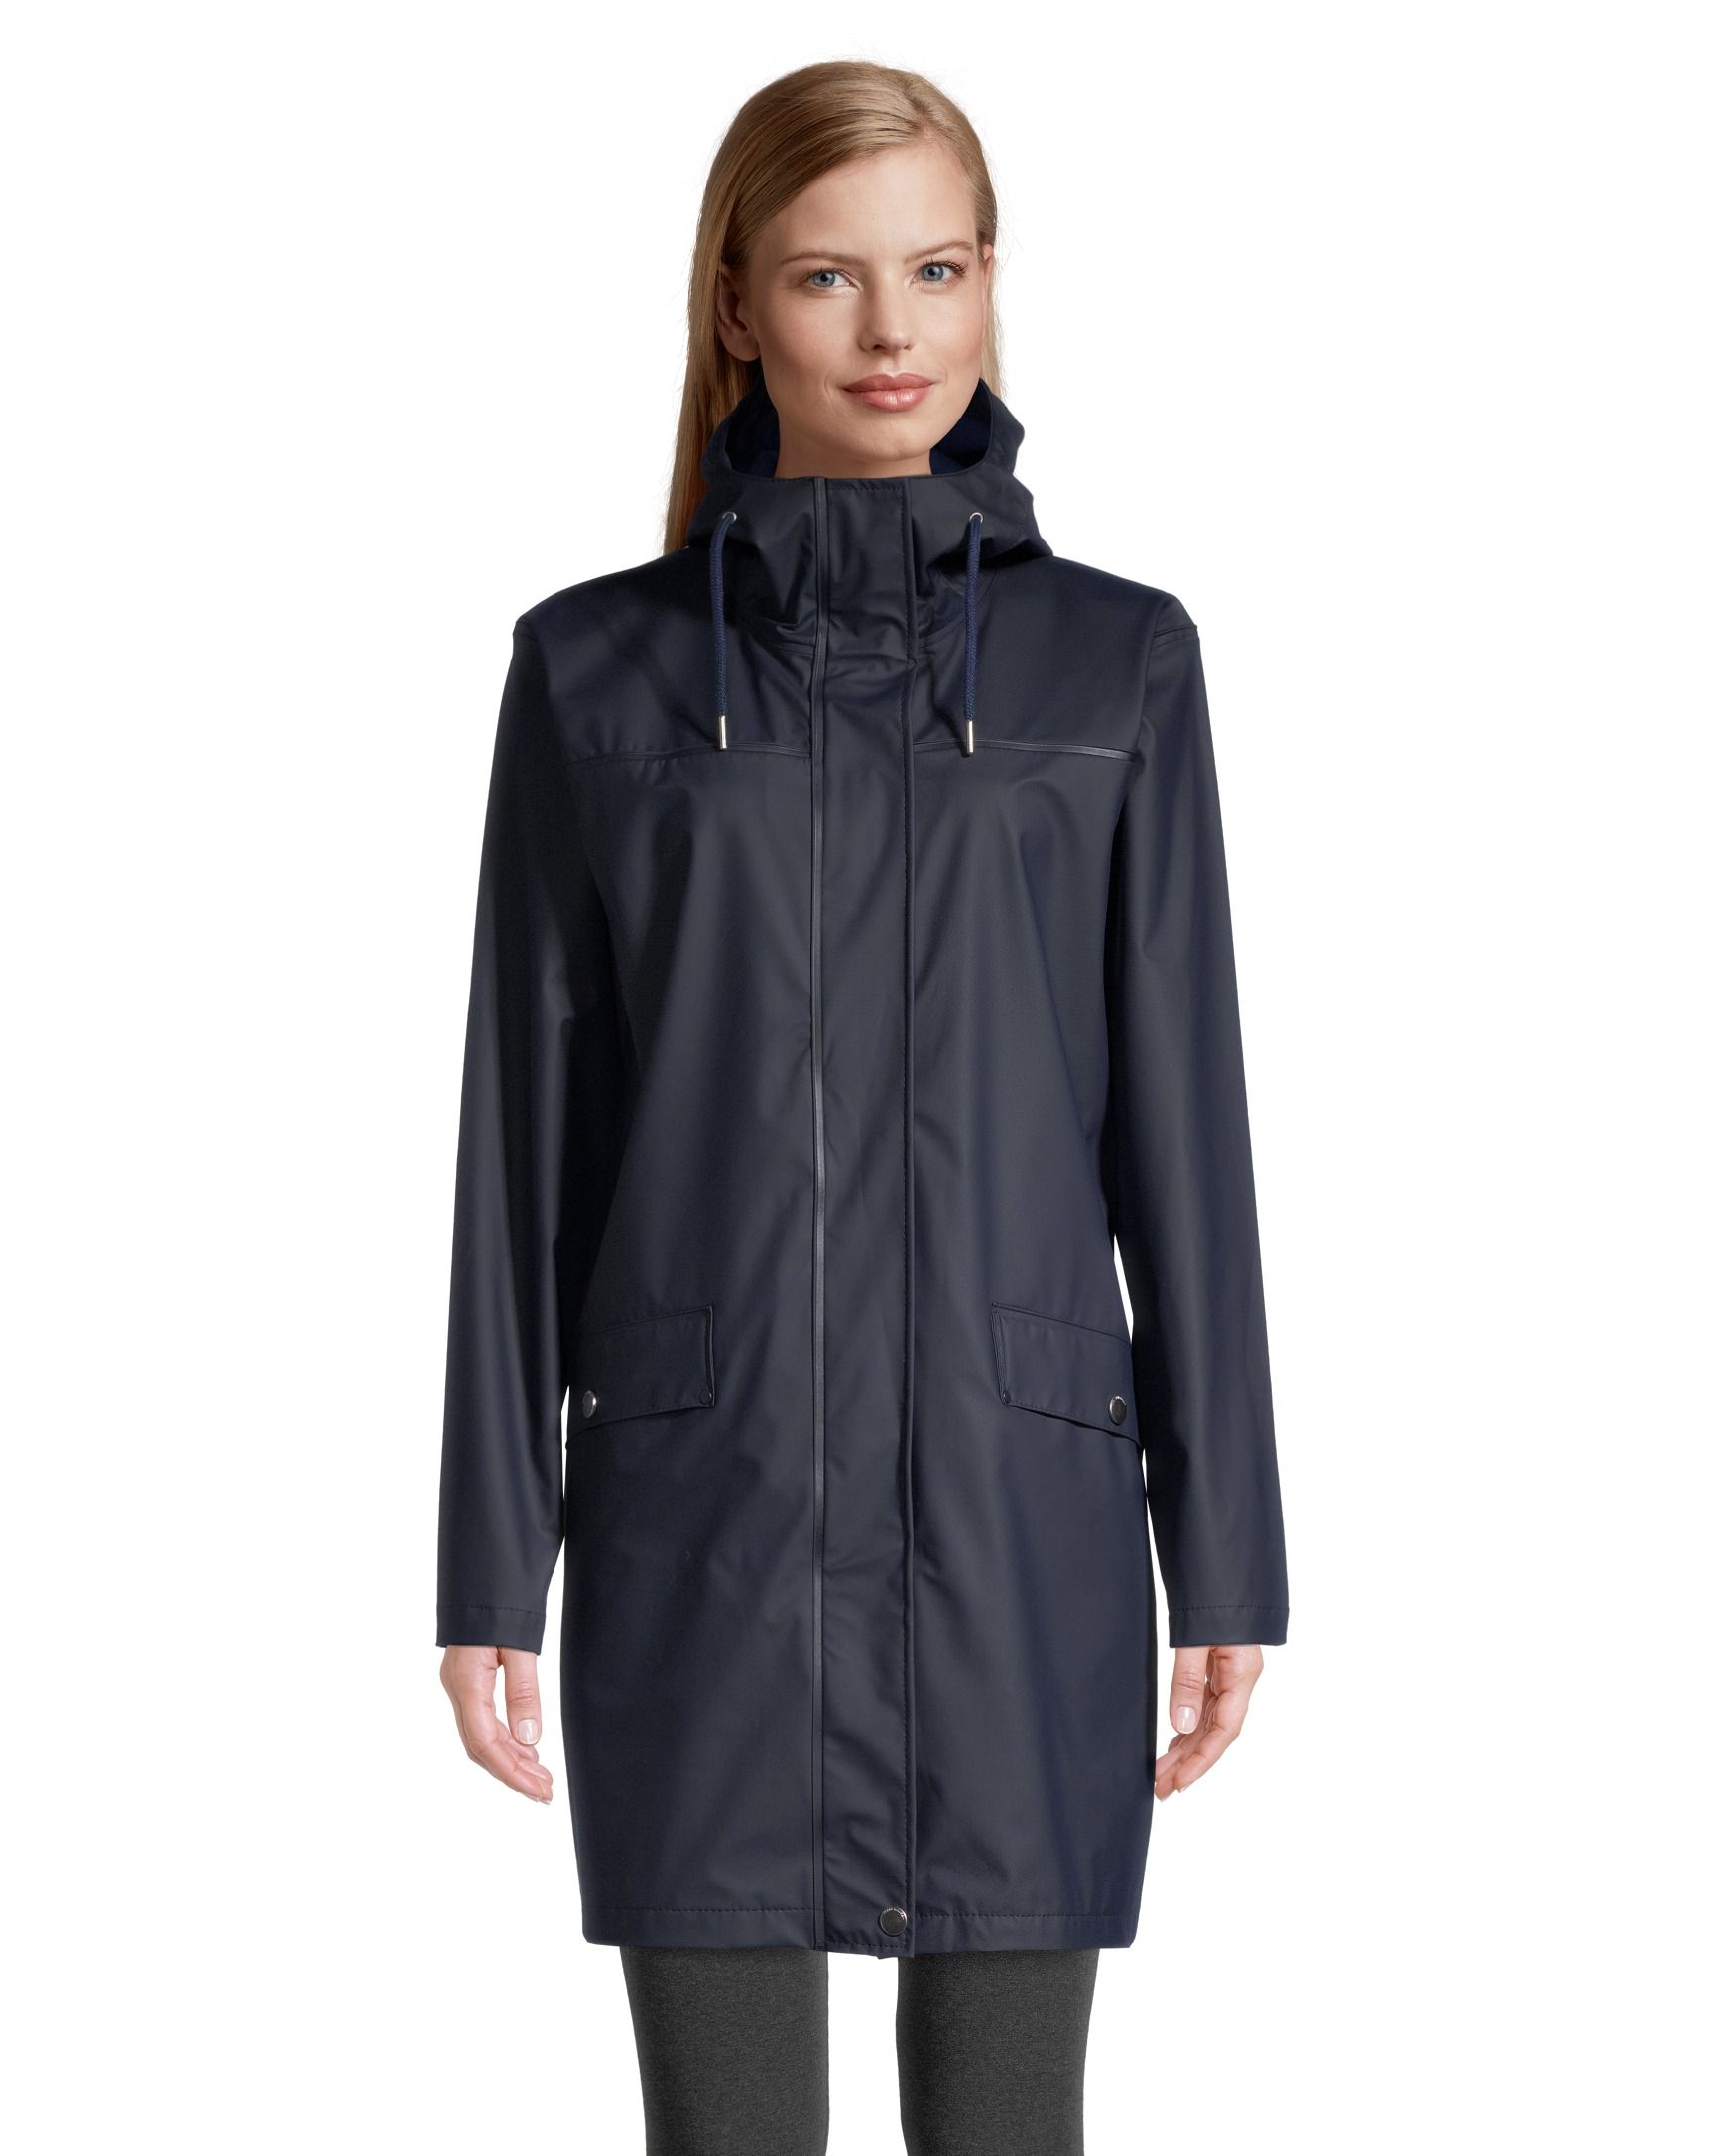 Helly Hansen Women's Moss Helox Waterproof Long Rain Jacket